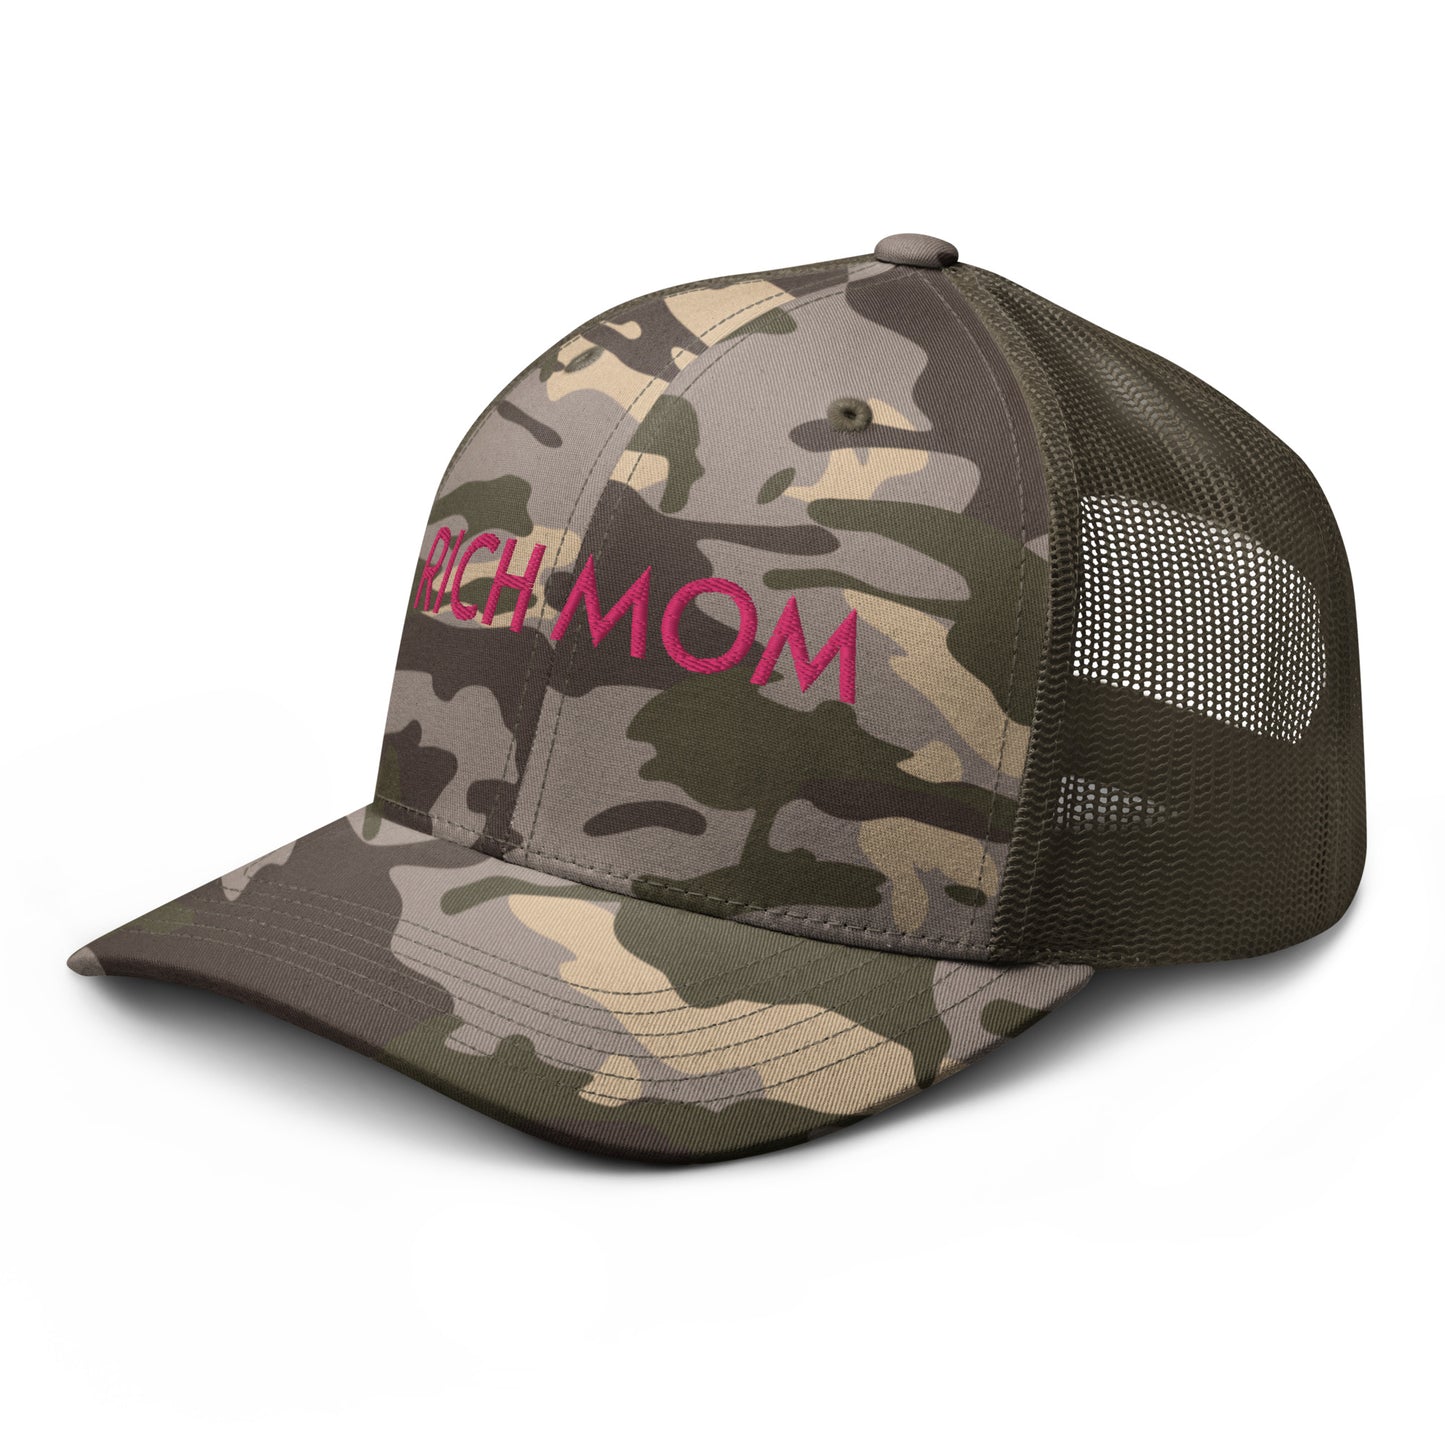 RICH MOM Camouflage trucker hat